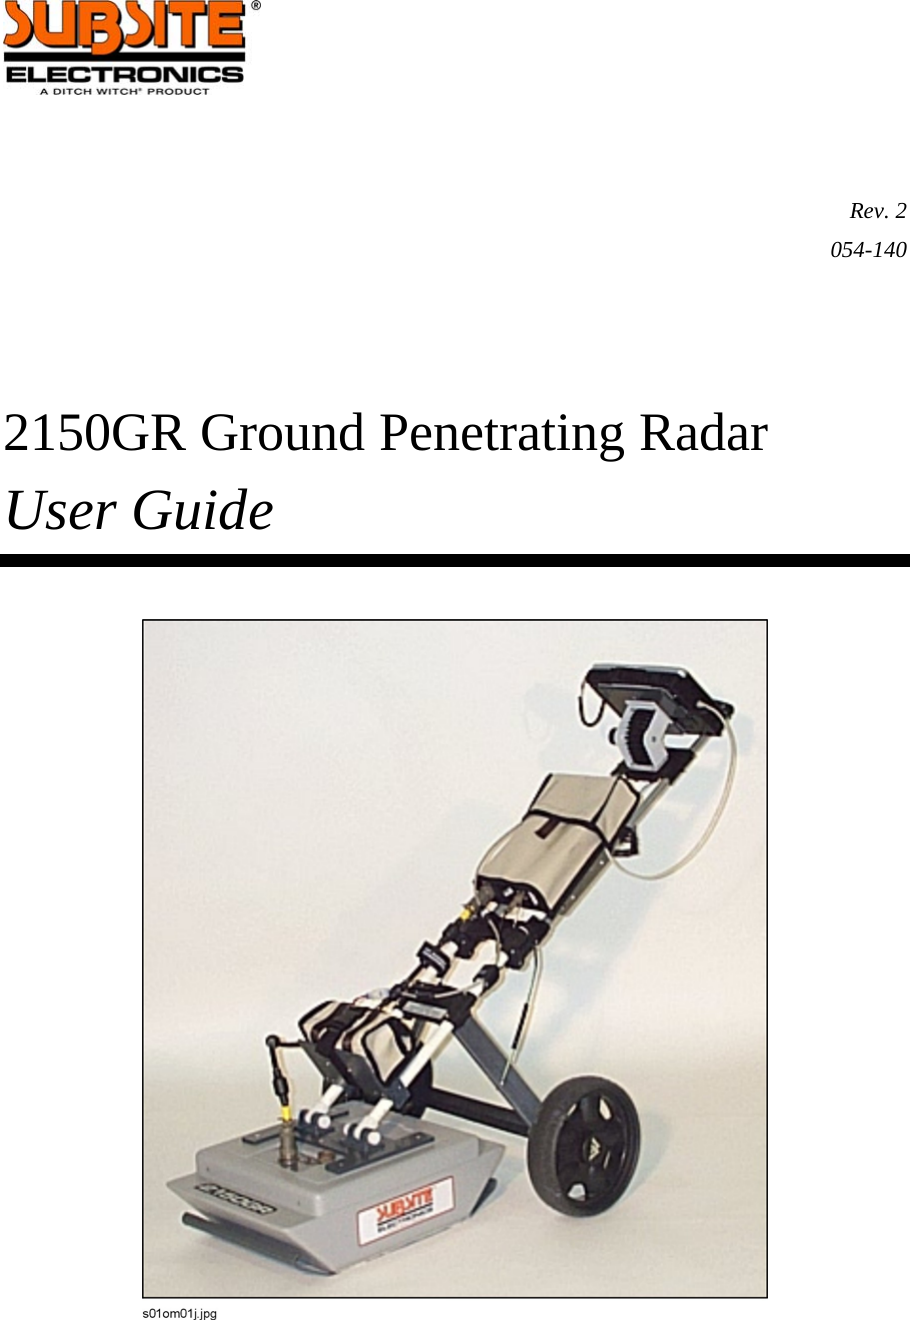     Rev. 2 054-140     2150GR Ground Penetrating Radar User Guide   